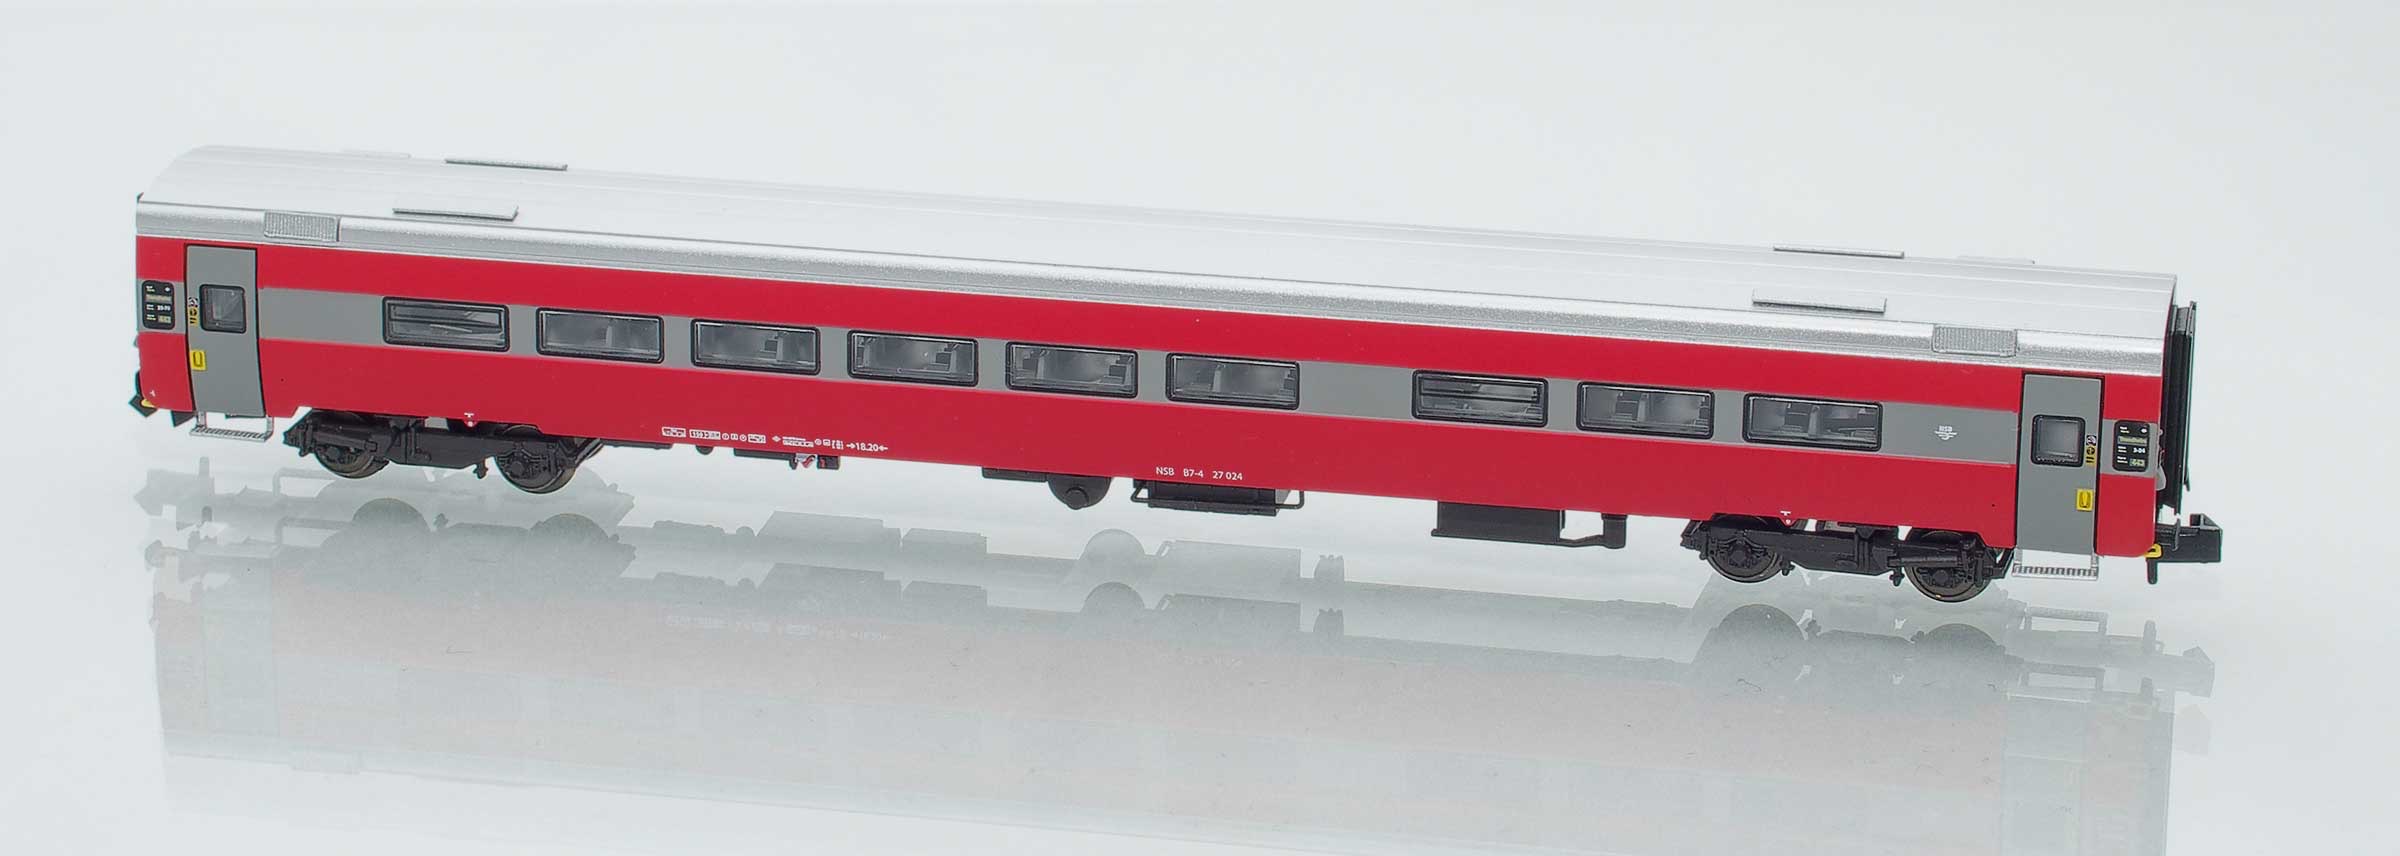 Supplement car 18004: NSB express train car B7-4